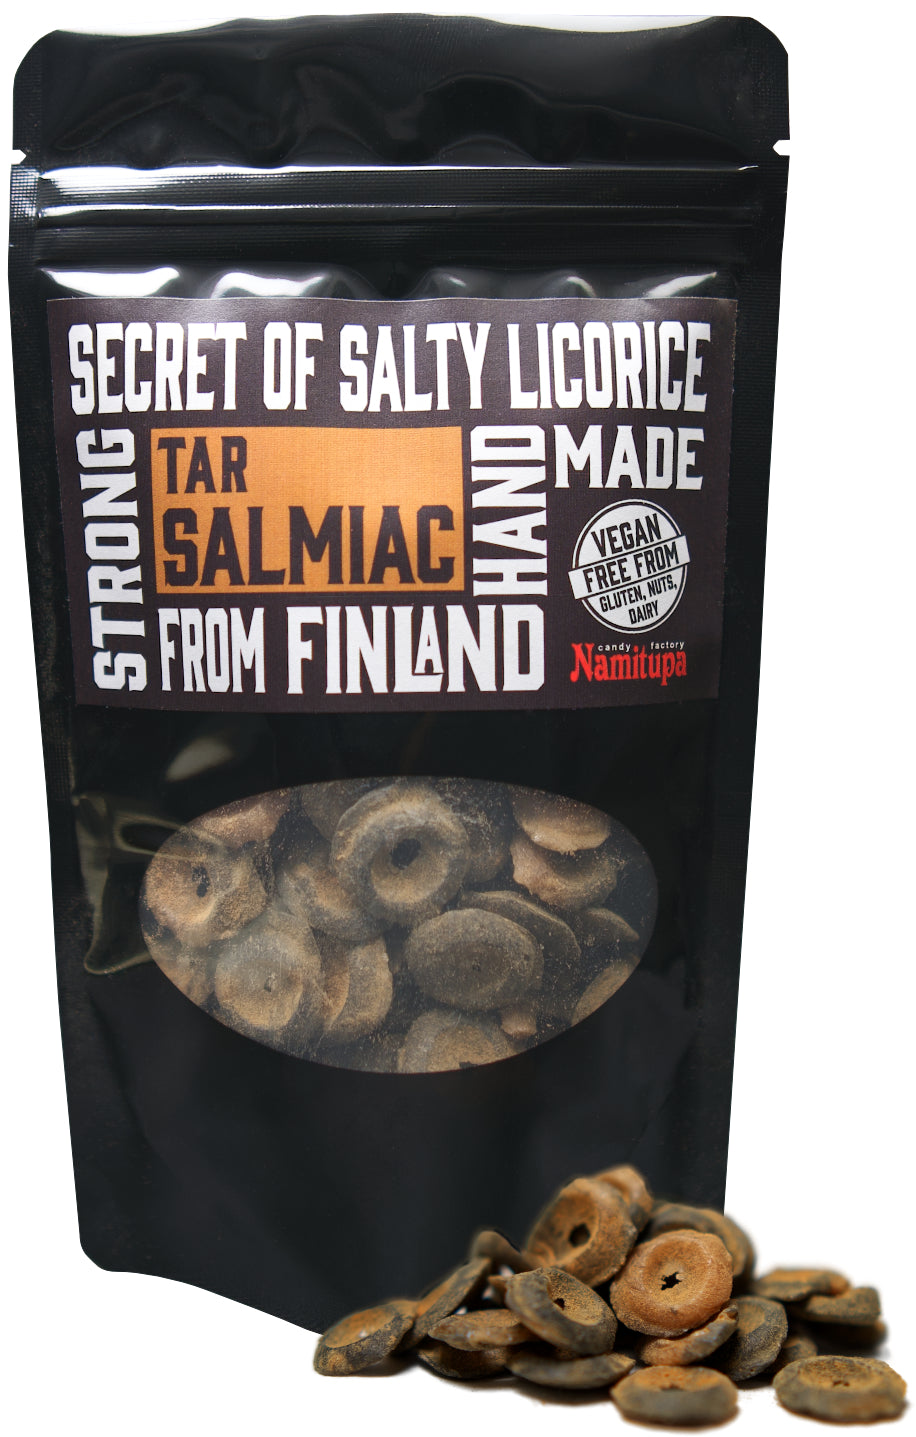 Klassieke combinatie van salmiak en teer heeft een plaats in de harten van de Finnen. Ben je klaar om het een kans te geven? Smaakvol krijgt deze snoepachtige rokerige teersmaak een balans en een beetje kick met een milde en zoetzure salmiaksmaak. Perfecte combinatie, zeggen velen. Namitupa Tar Salmiac zit in een verpakking van 100gram 